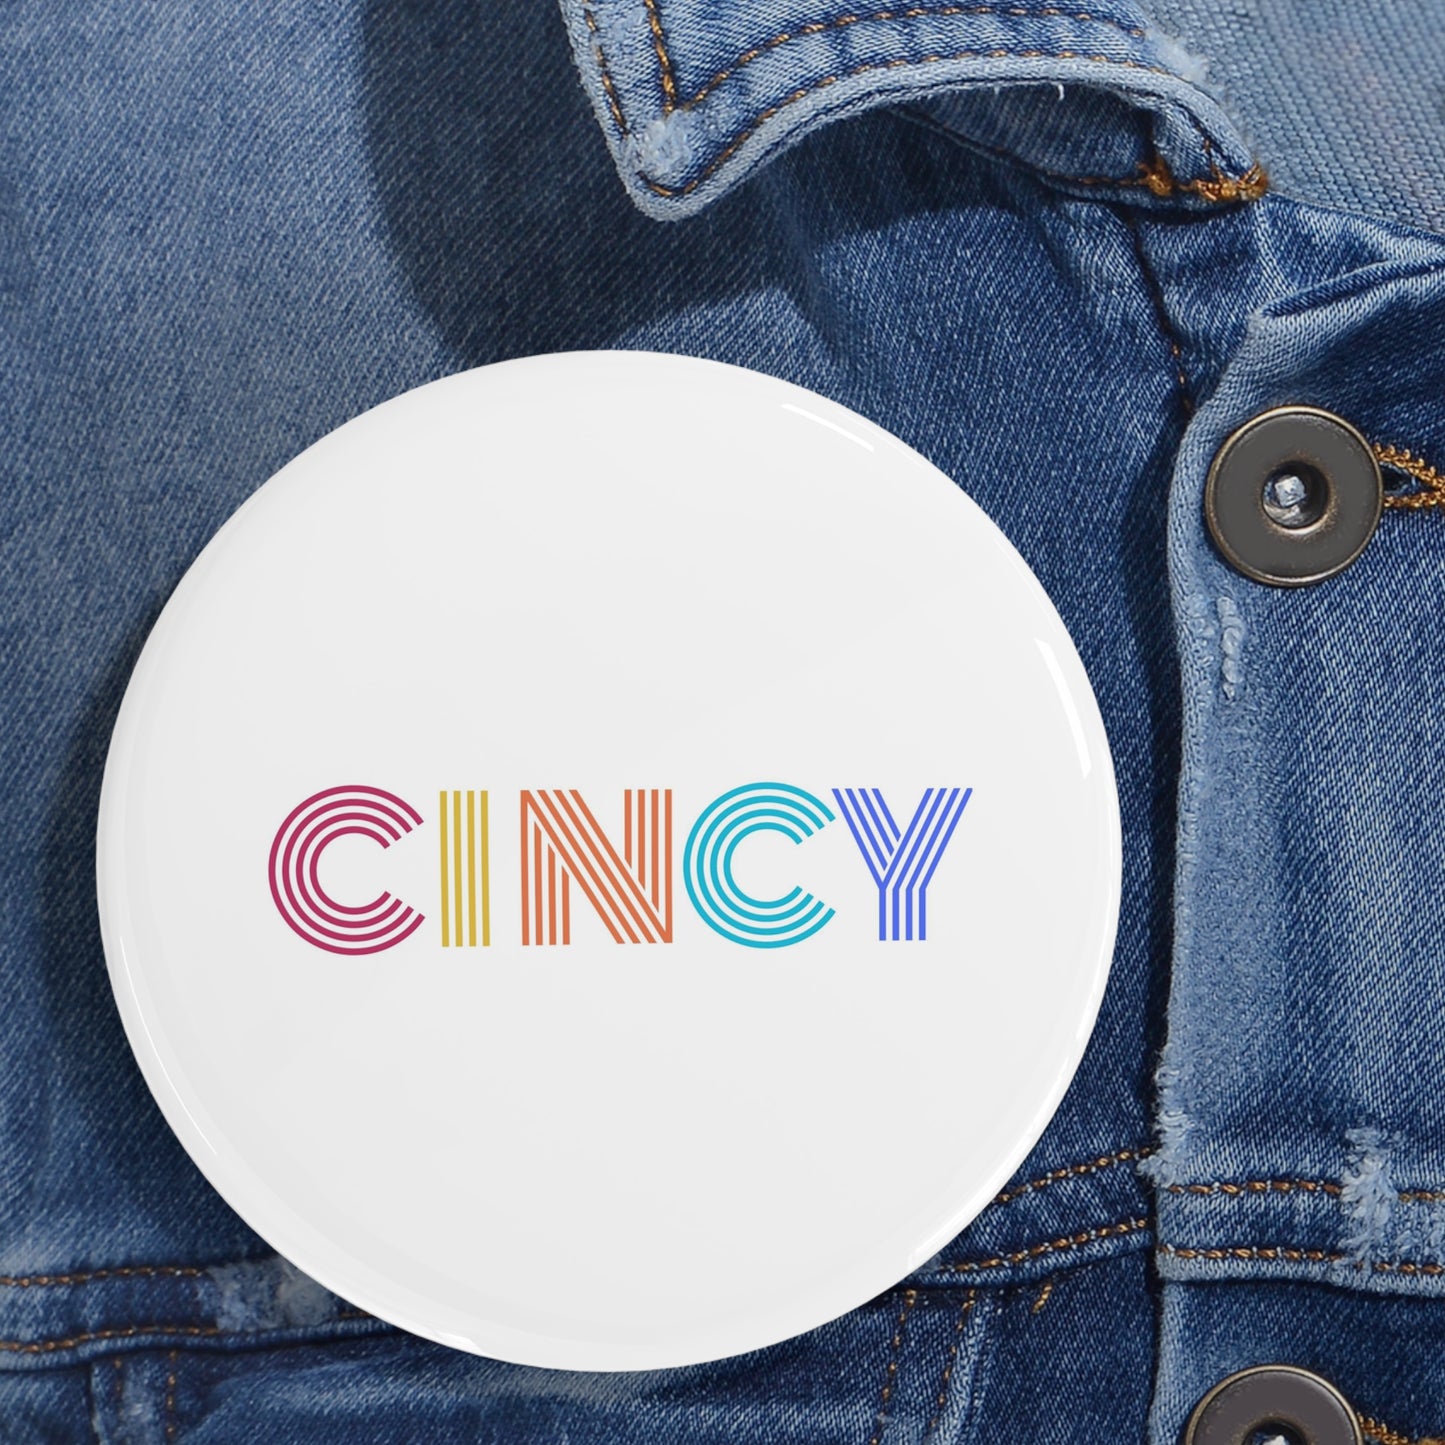 CINCY - Round Pins